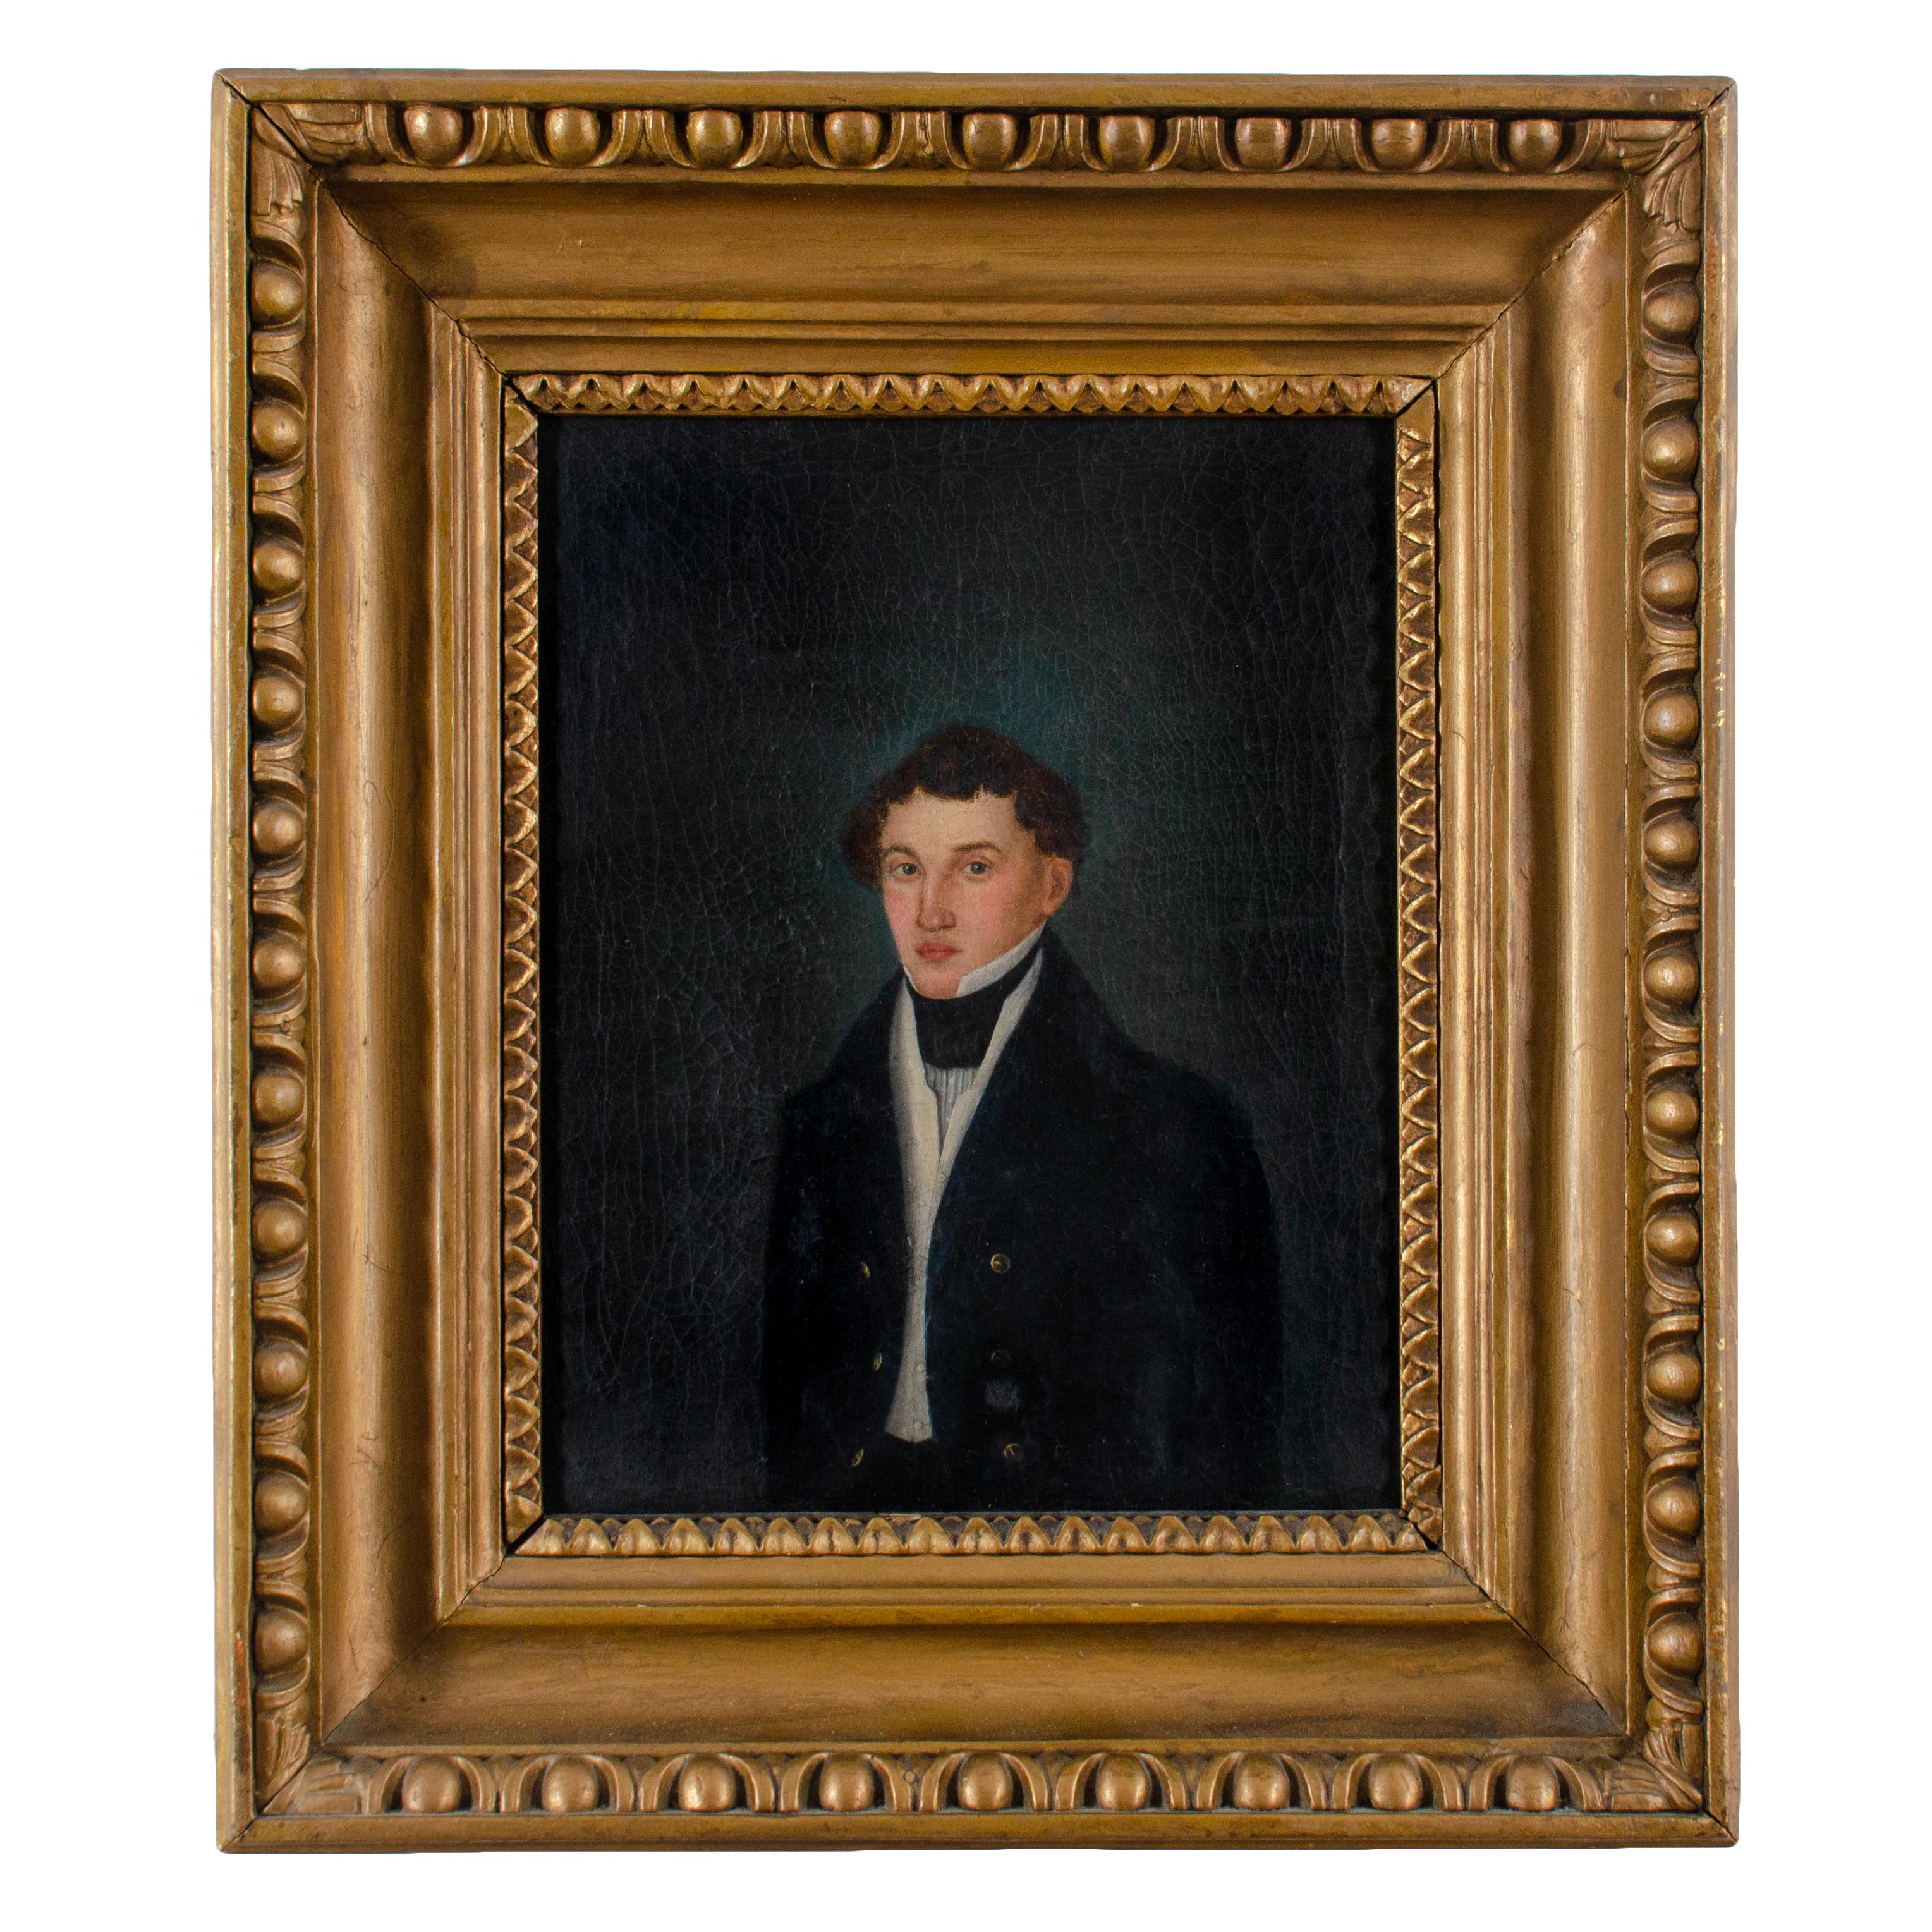 Limner-Porträt eines jungen Mannes, frühes 19. Jahrhundert.
Öl auf Leinwand in einem Rahmen aus Ei und Abnäher. 

Leinwand: 8 ½ mal 10 ½ Zoll 
Rahmen: 13 ½ mal 15 ¾ Zoll